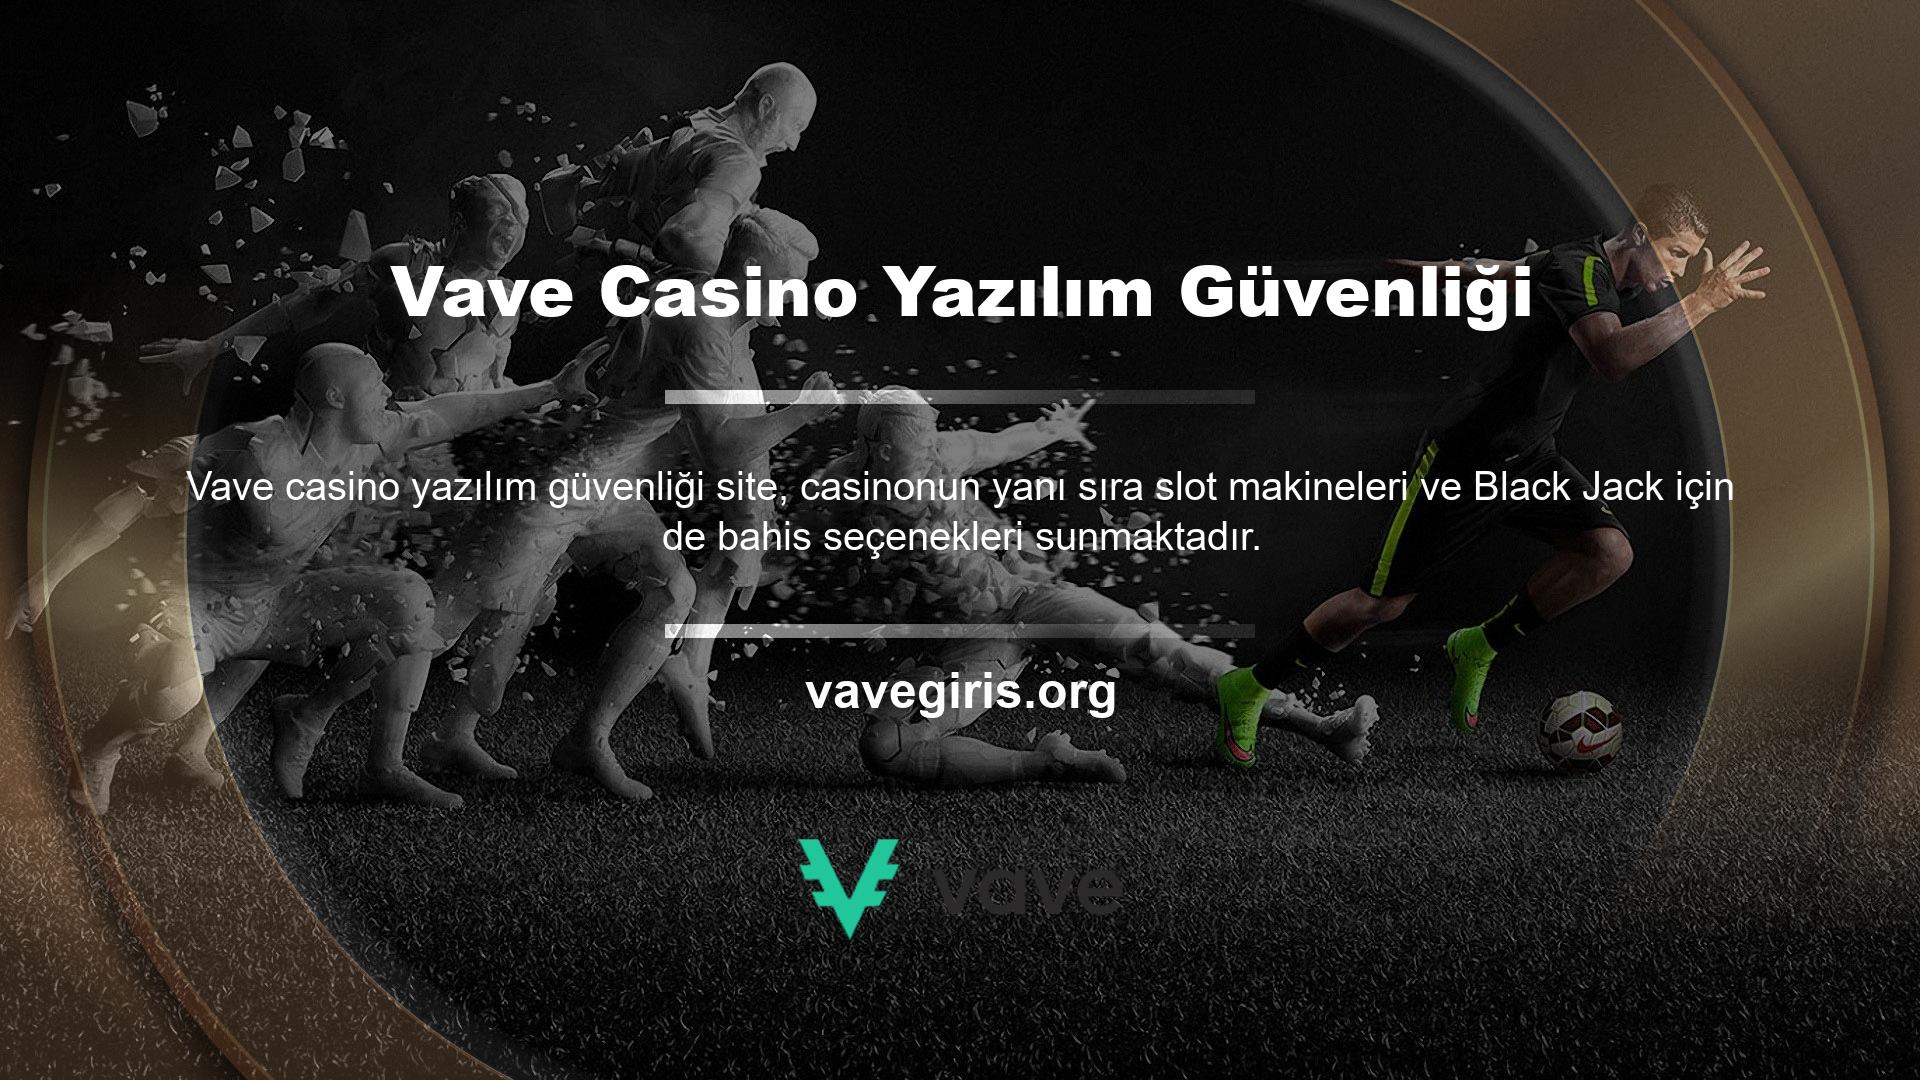 Bahisçiler, Vave casino yazılımı güvenlik giriş adreslerini kullanarak siteye erişebilirler